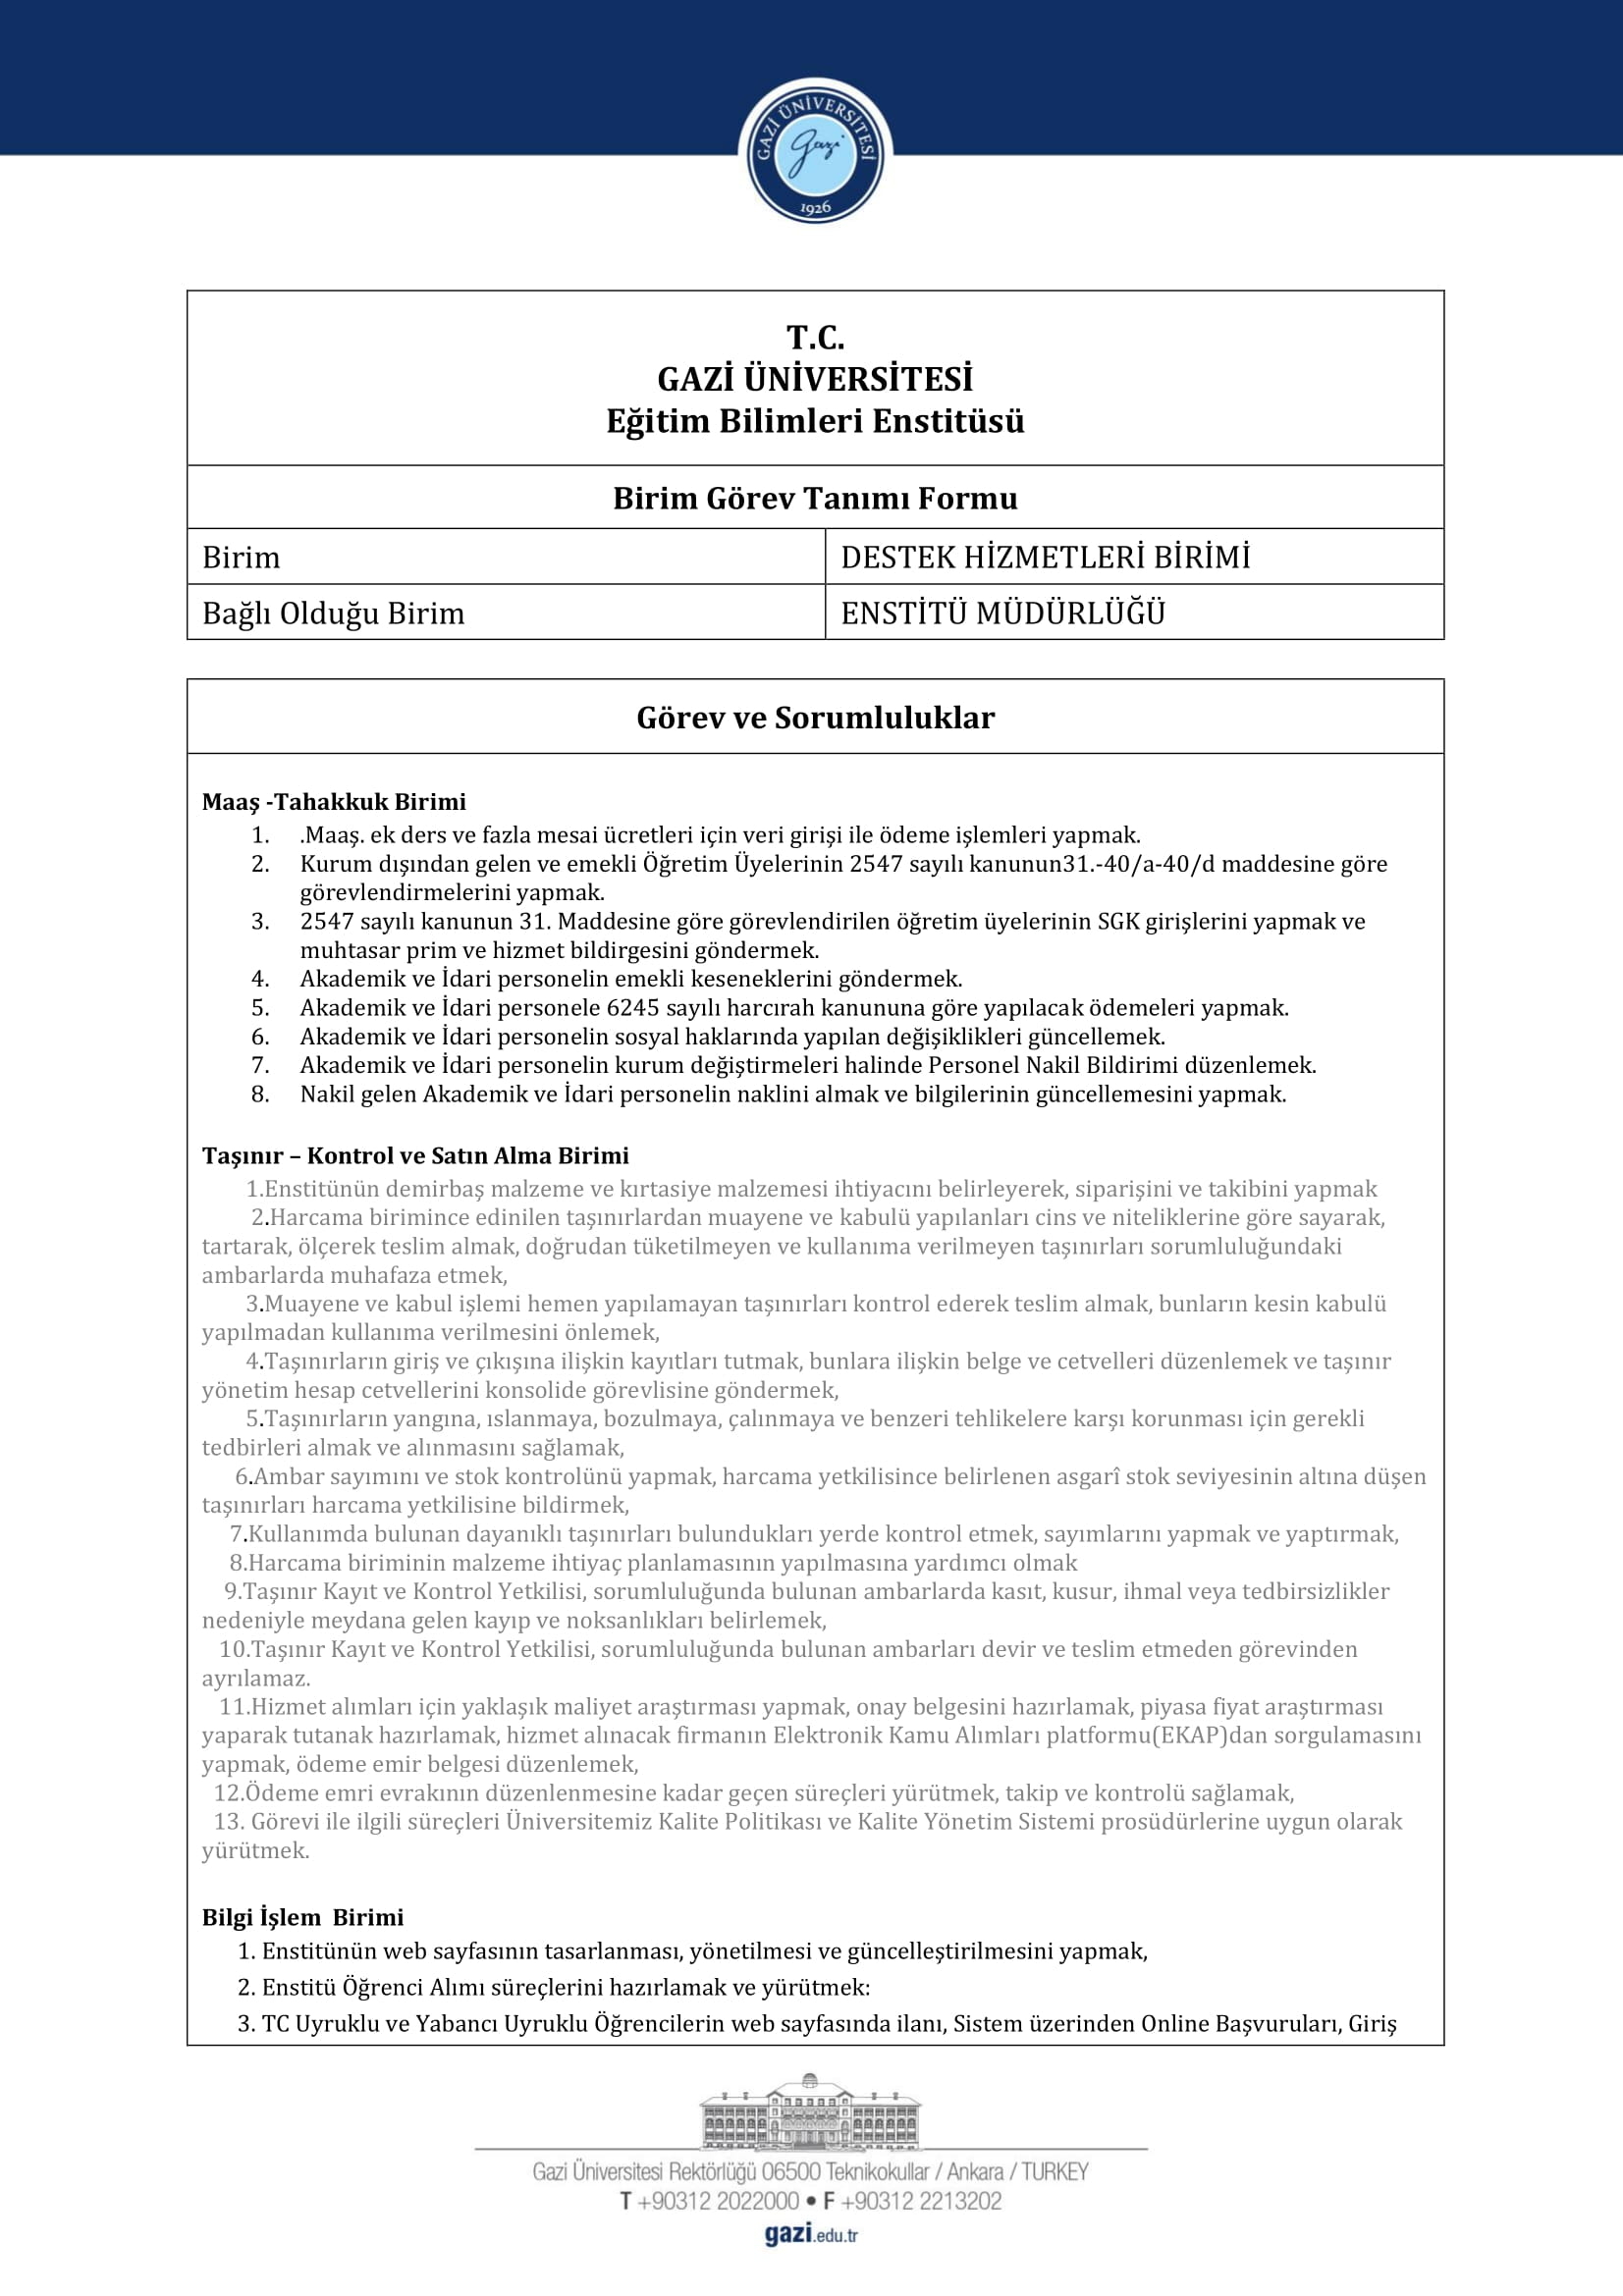 Enstitü Birim Görev Tanımı Formu-DESTEK HİZMETLERİ BİRİMİ 1-1